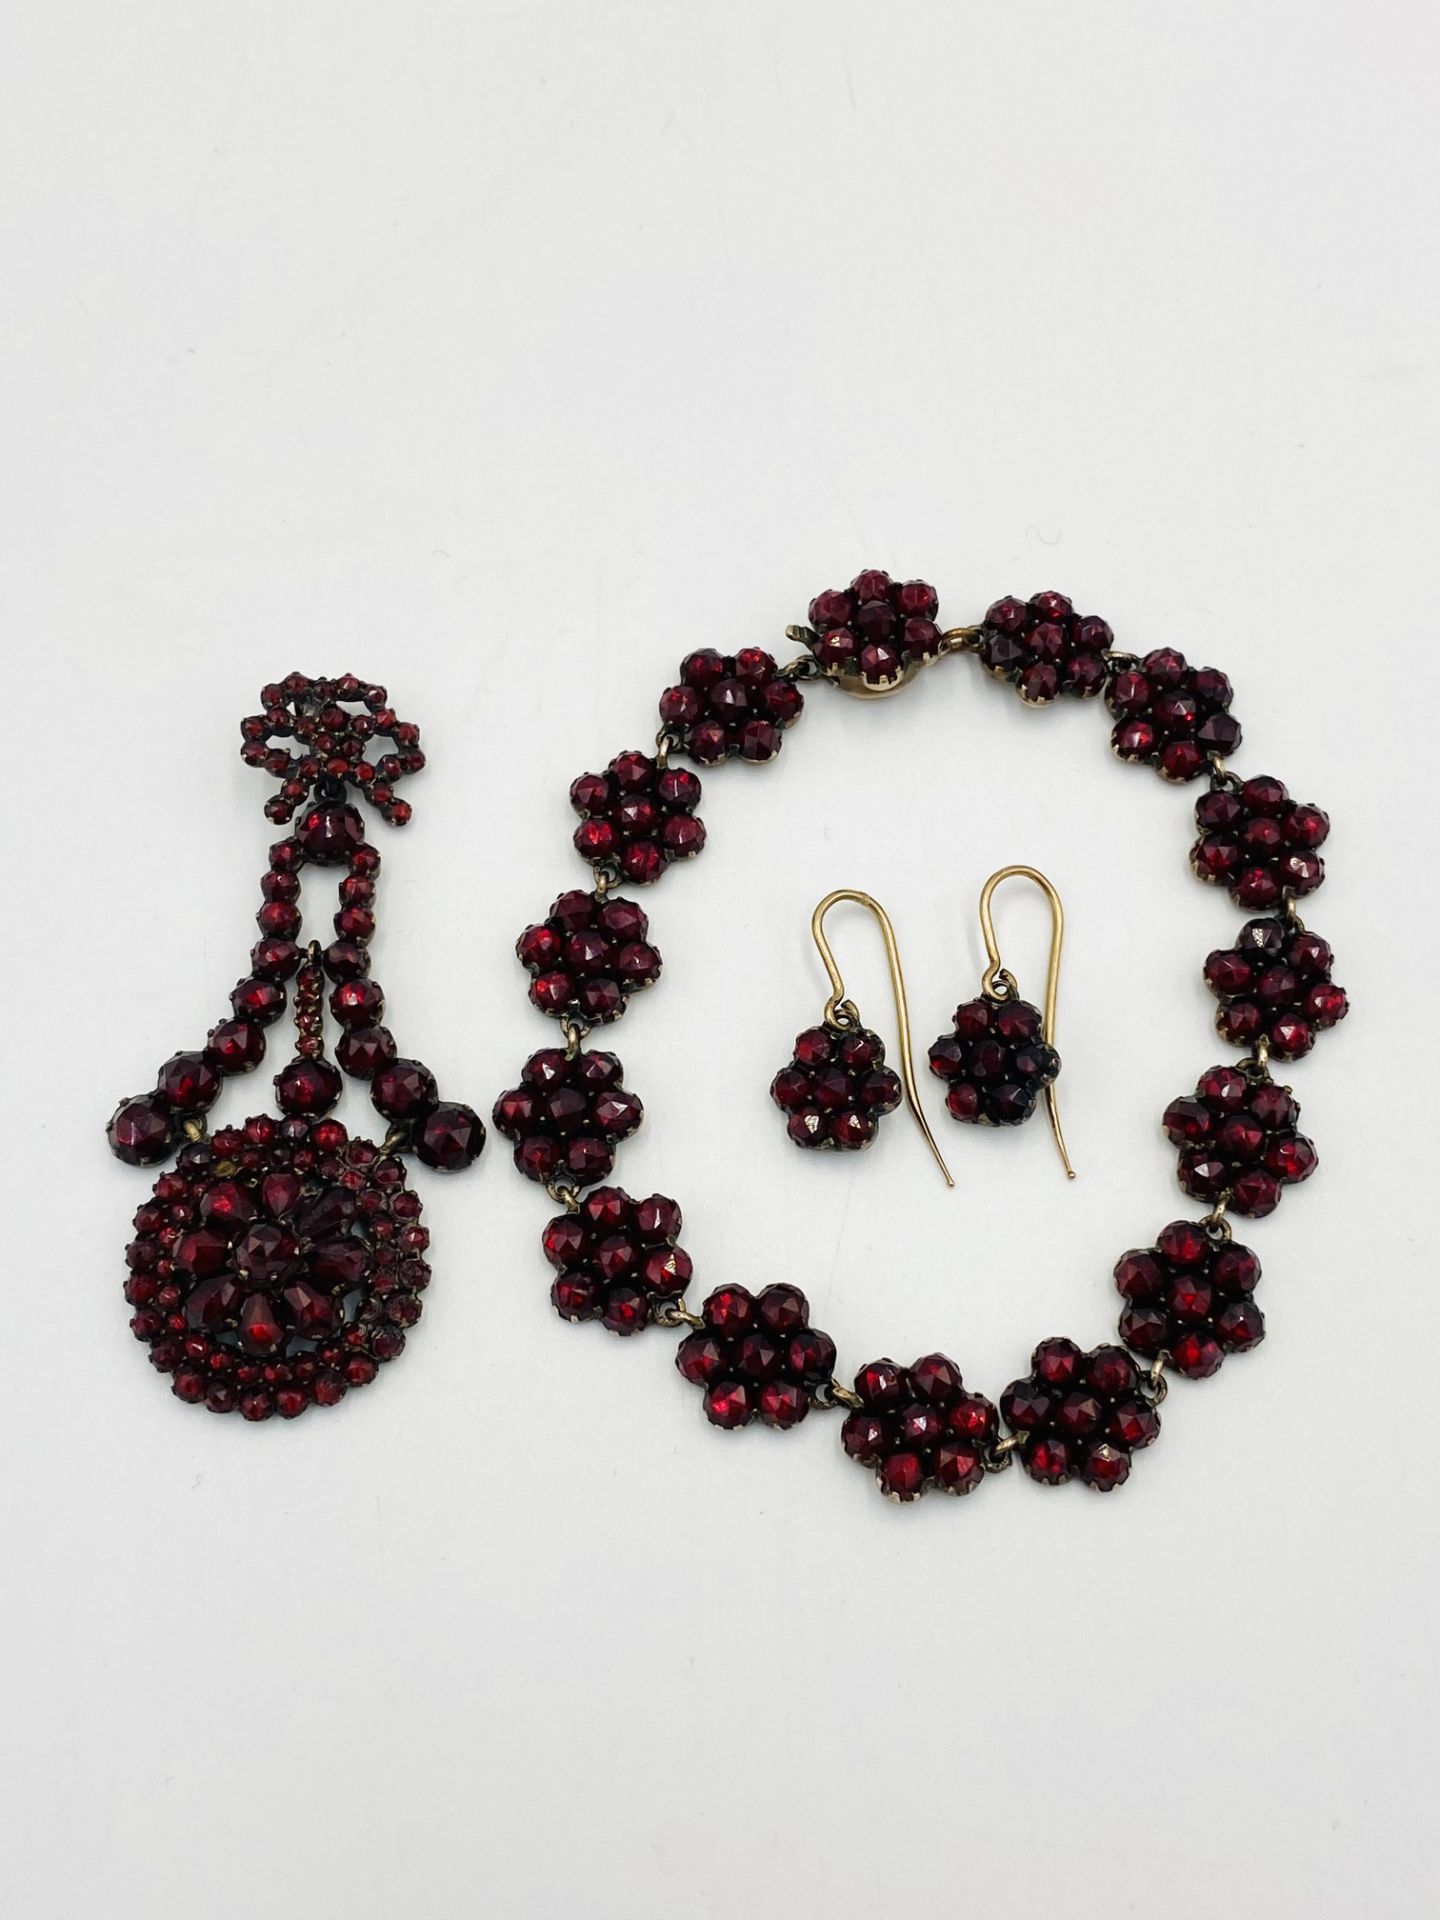 Garnet pendant, bracelet and earring set. - Bild 2 aus 3